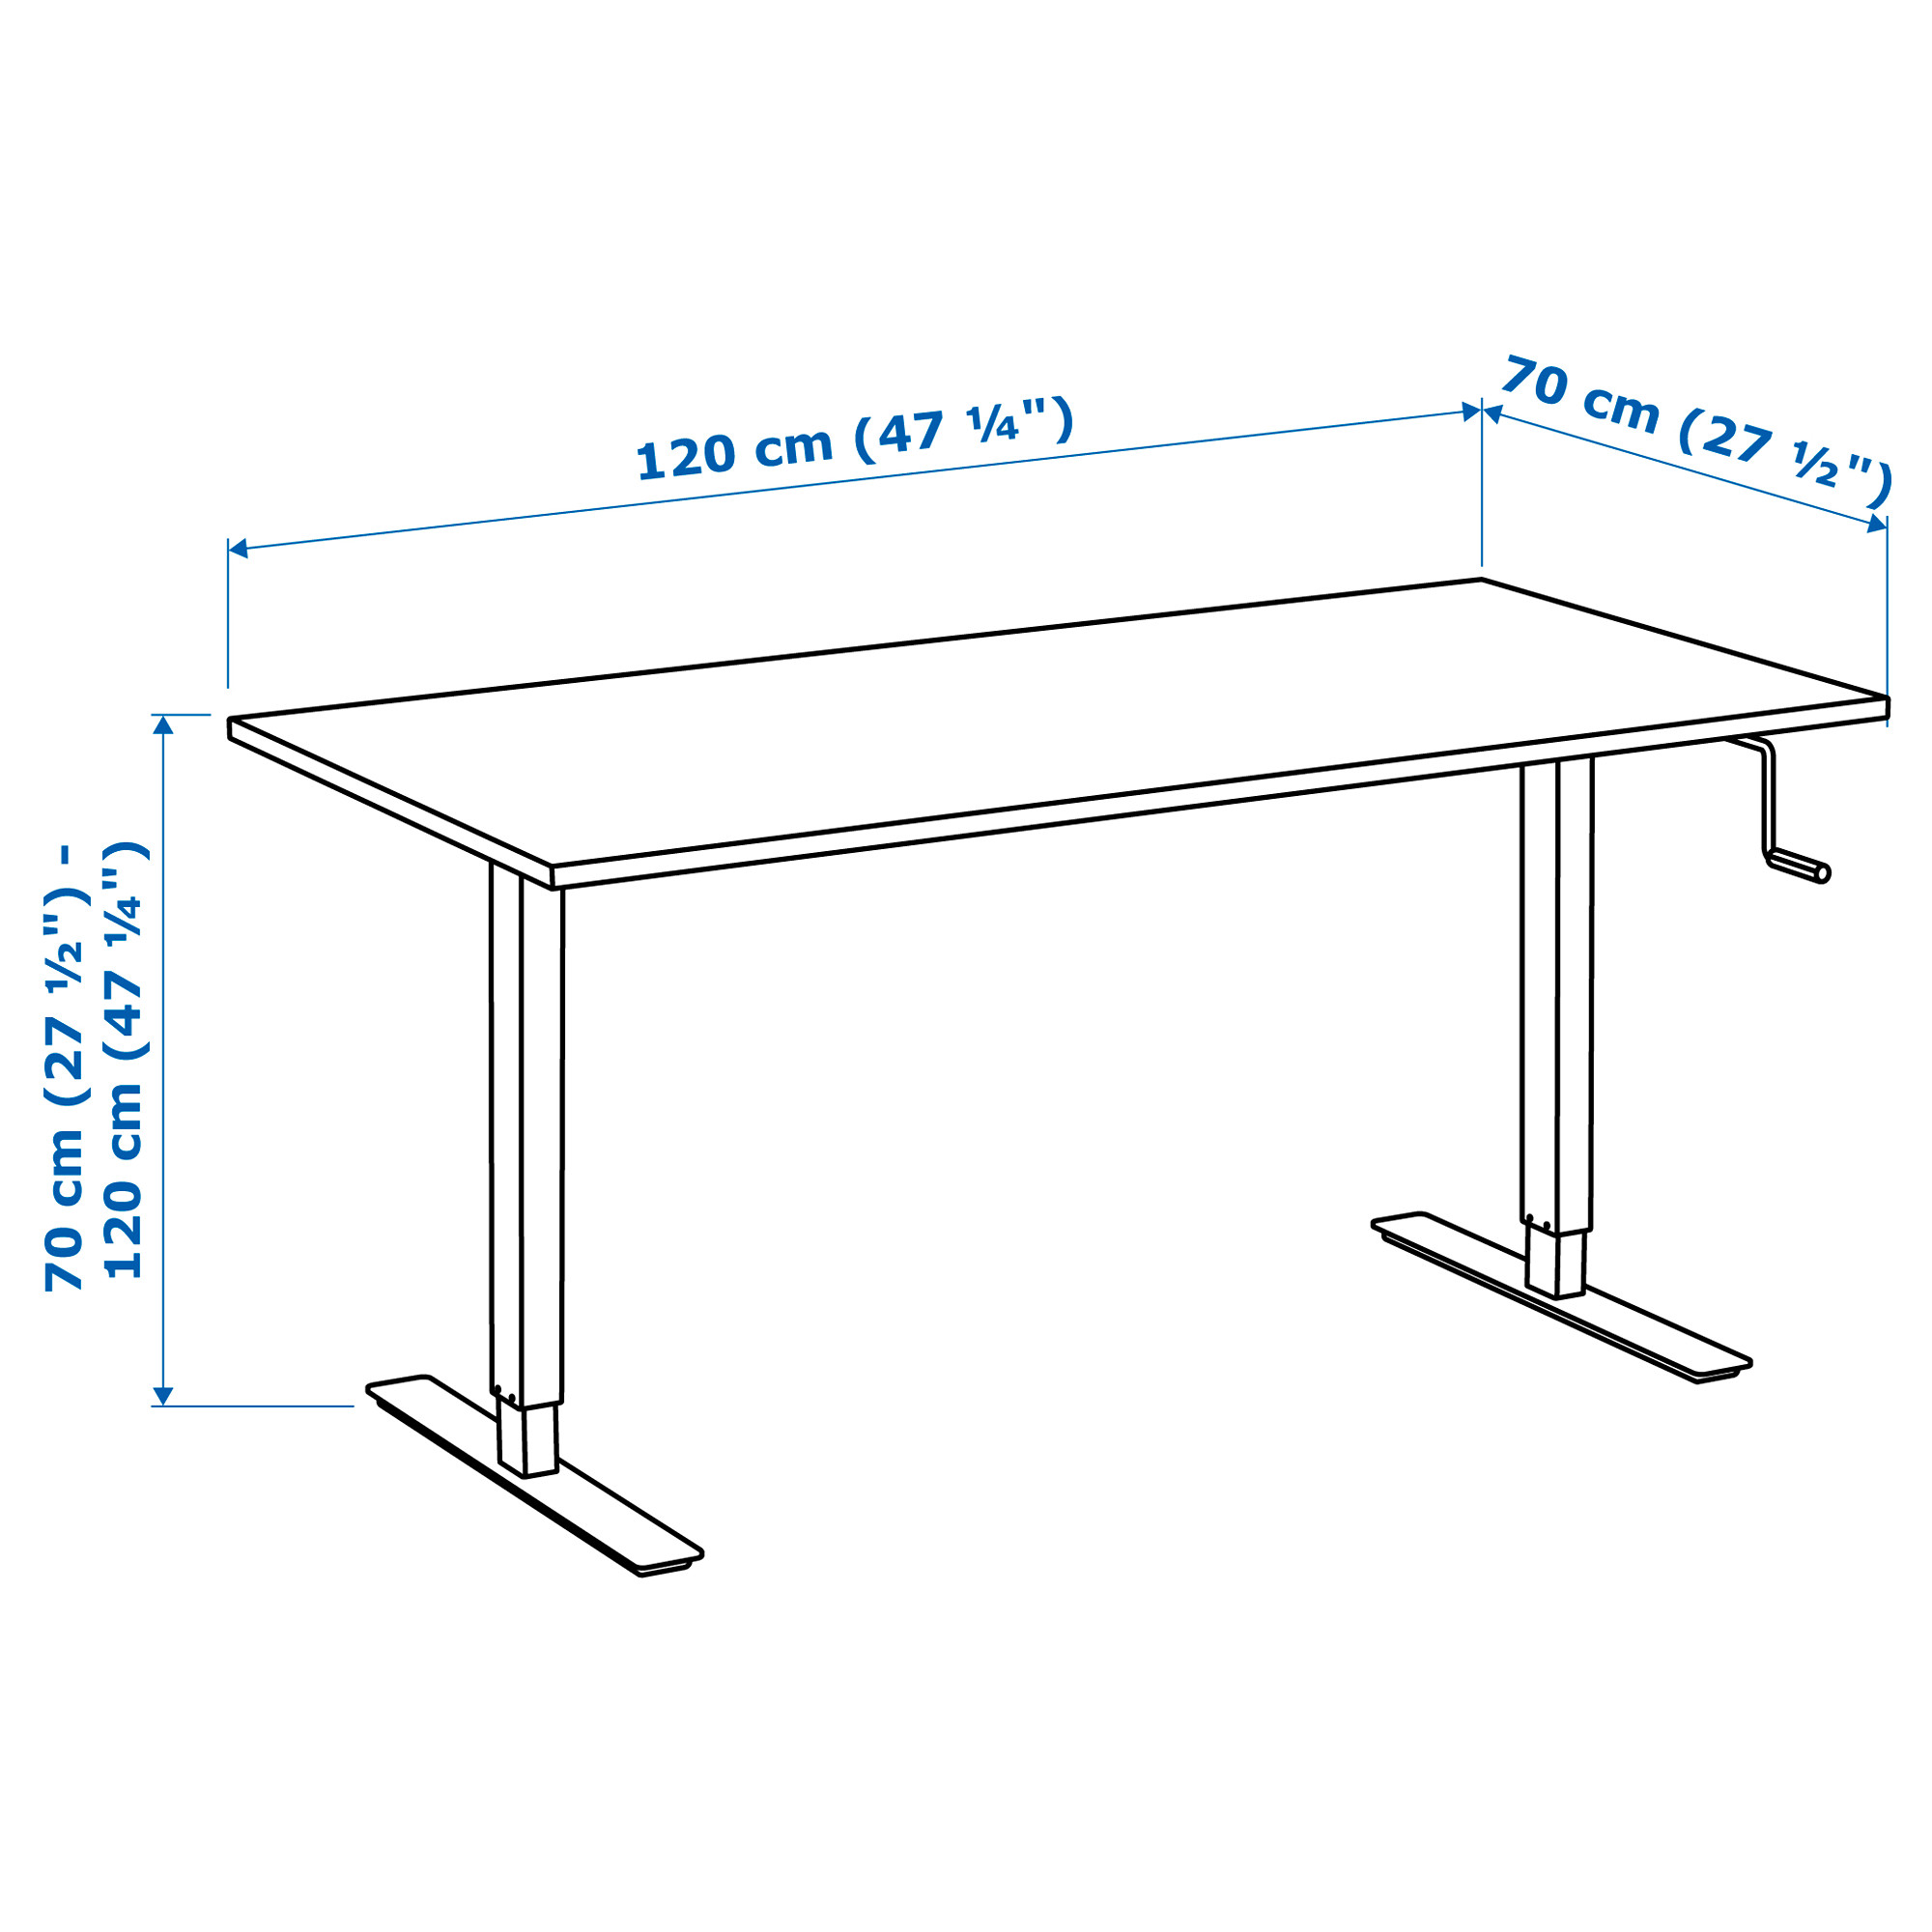 Стол высотой 90 см. Ikea skarsta 160x80. Ikea skarsta стол. Стол икеа регулируемый по высоте. Регулируемый стол икеа СКАРСТА.